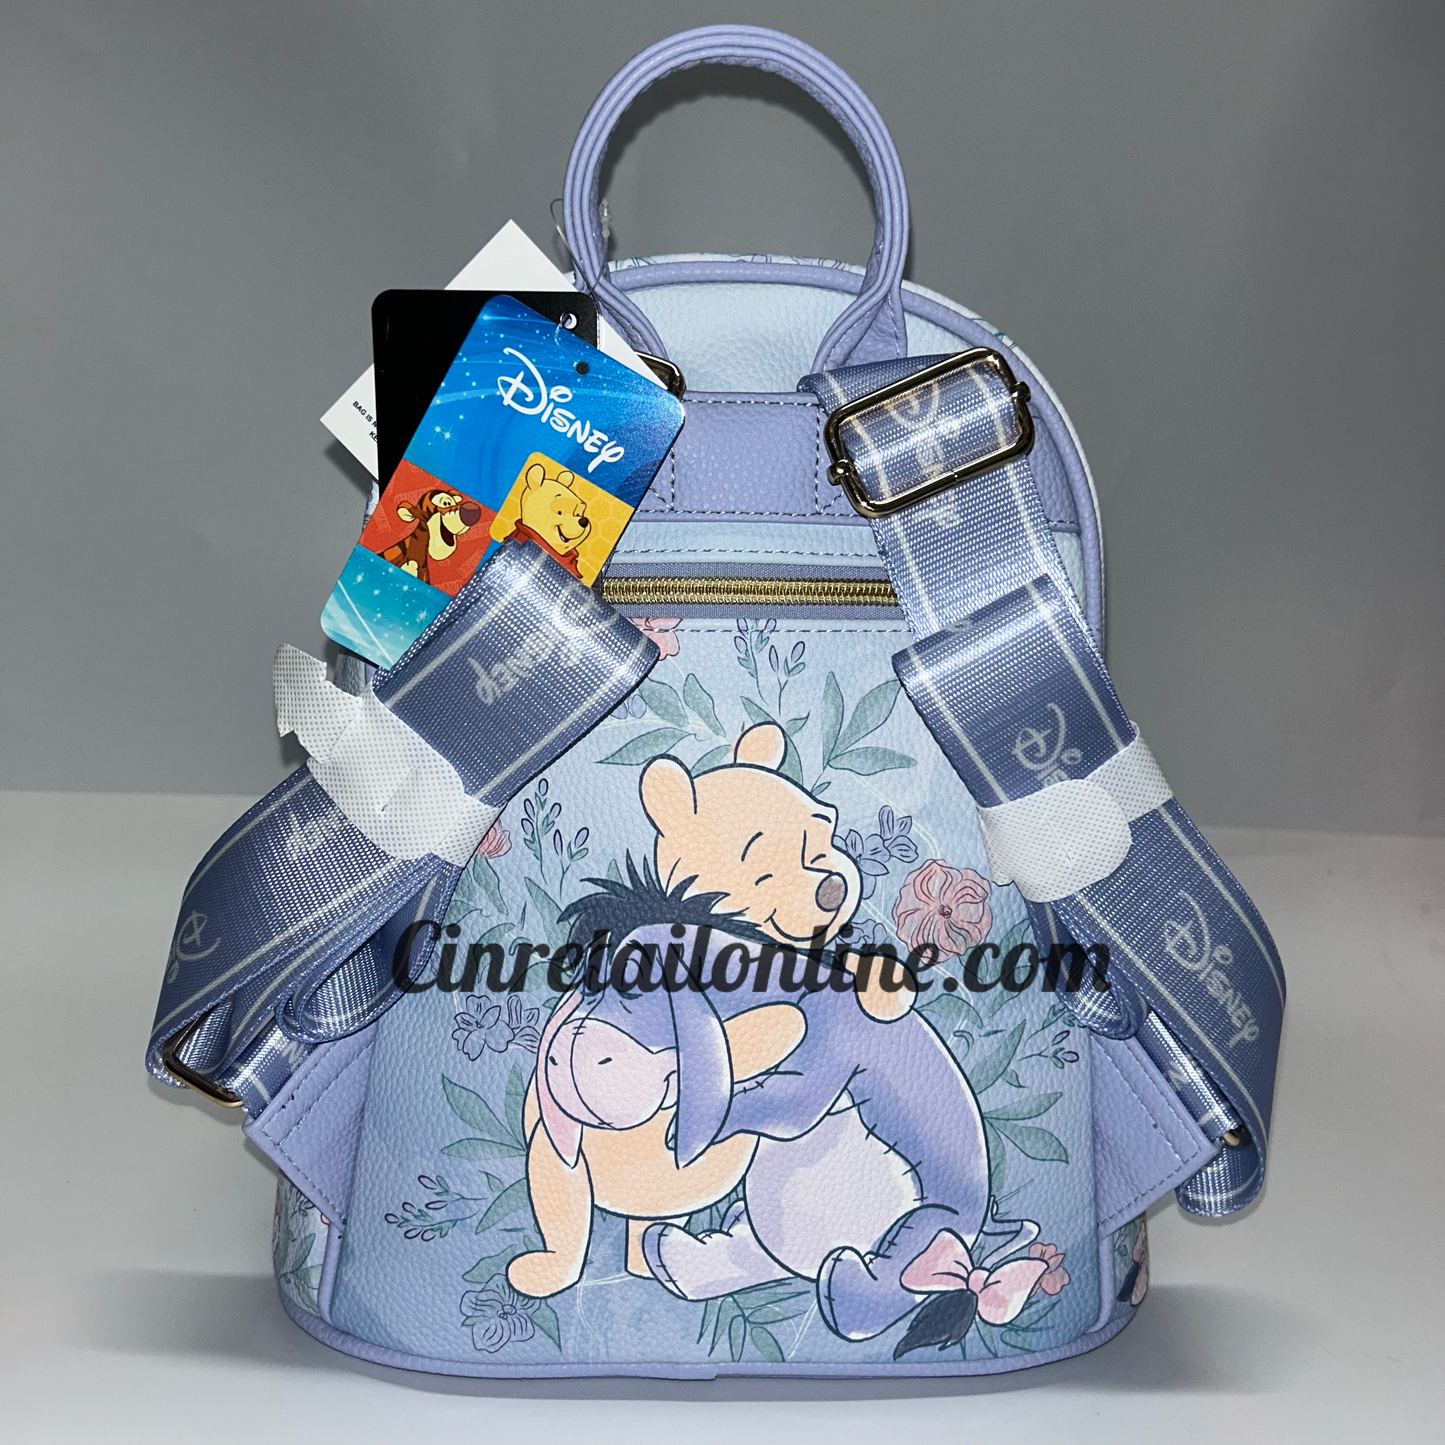 Eeyore Disney Backpack